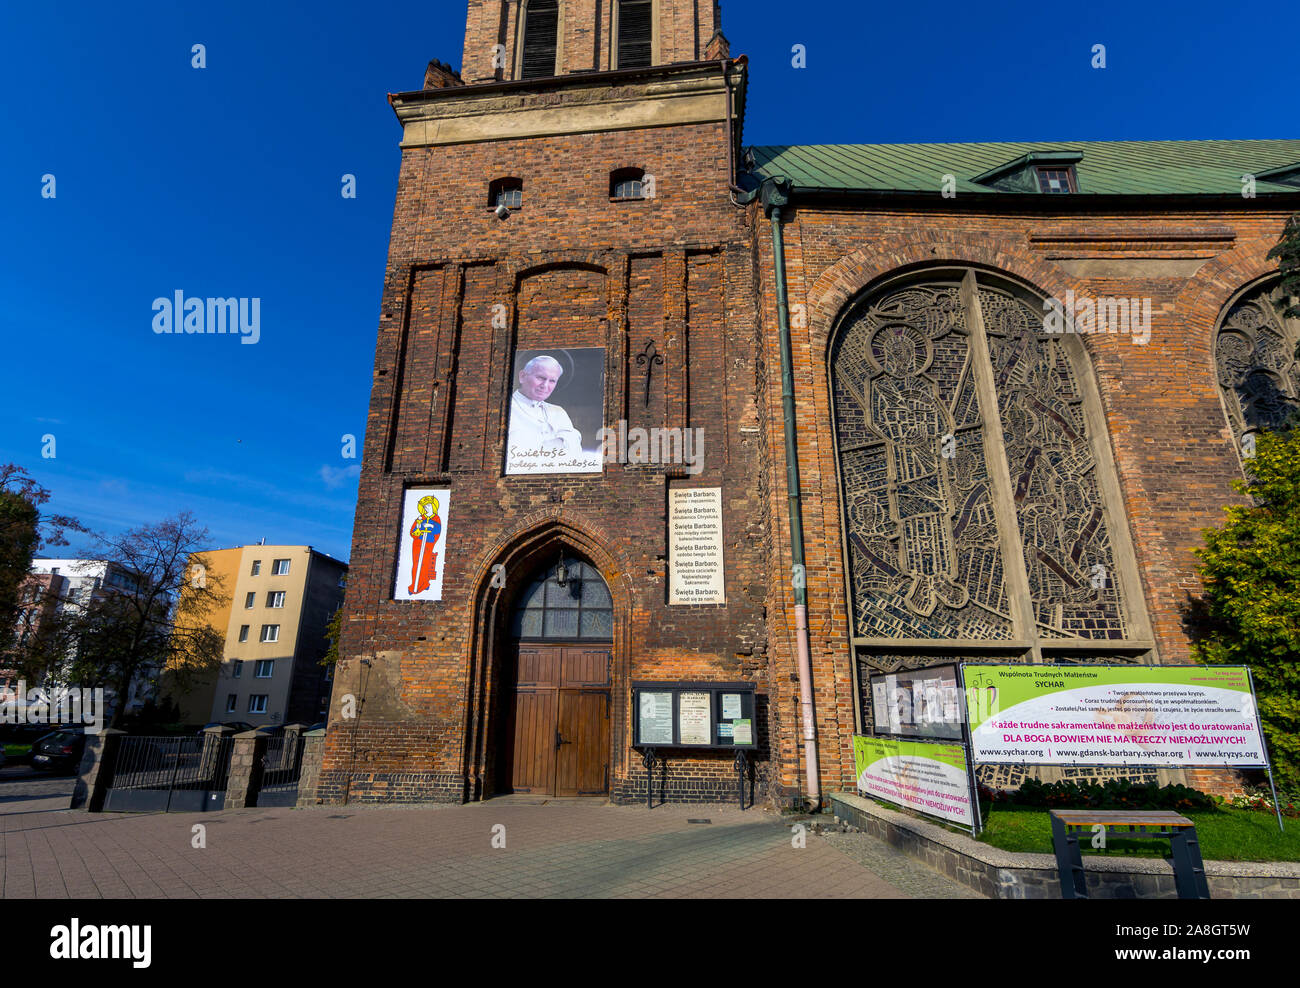 Polish church in Gdansk Stock Photo